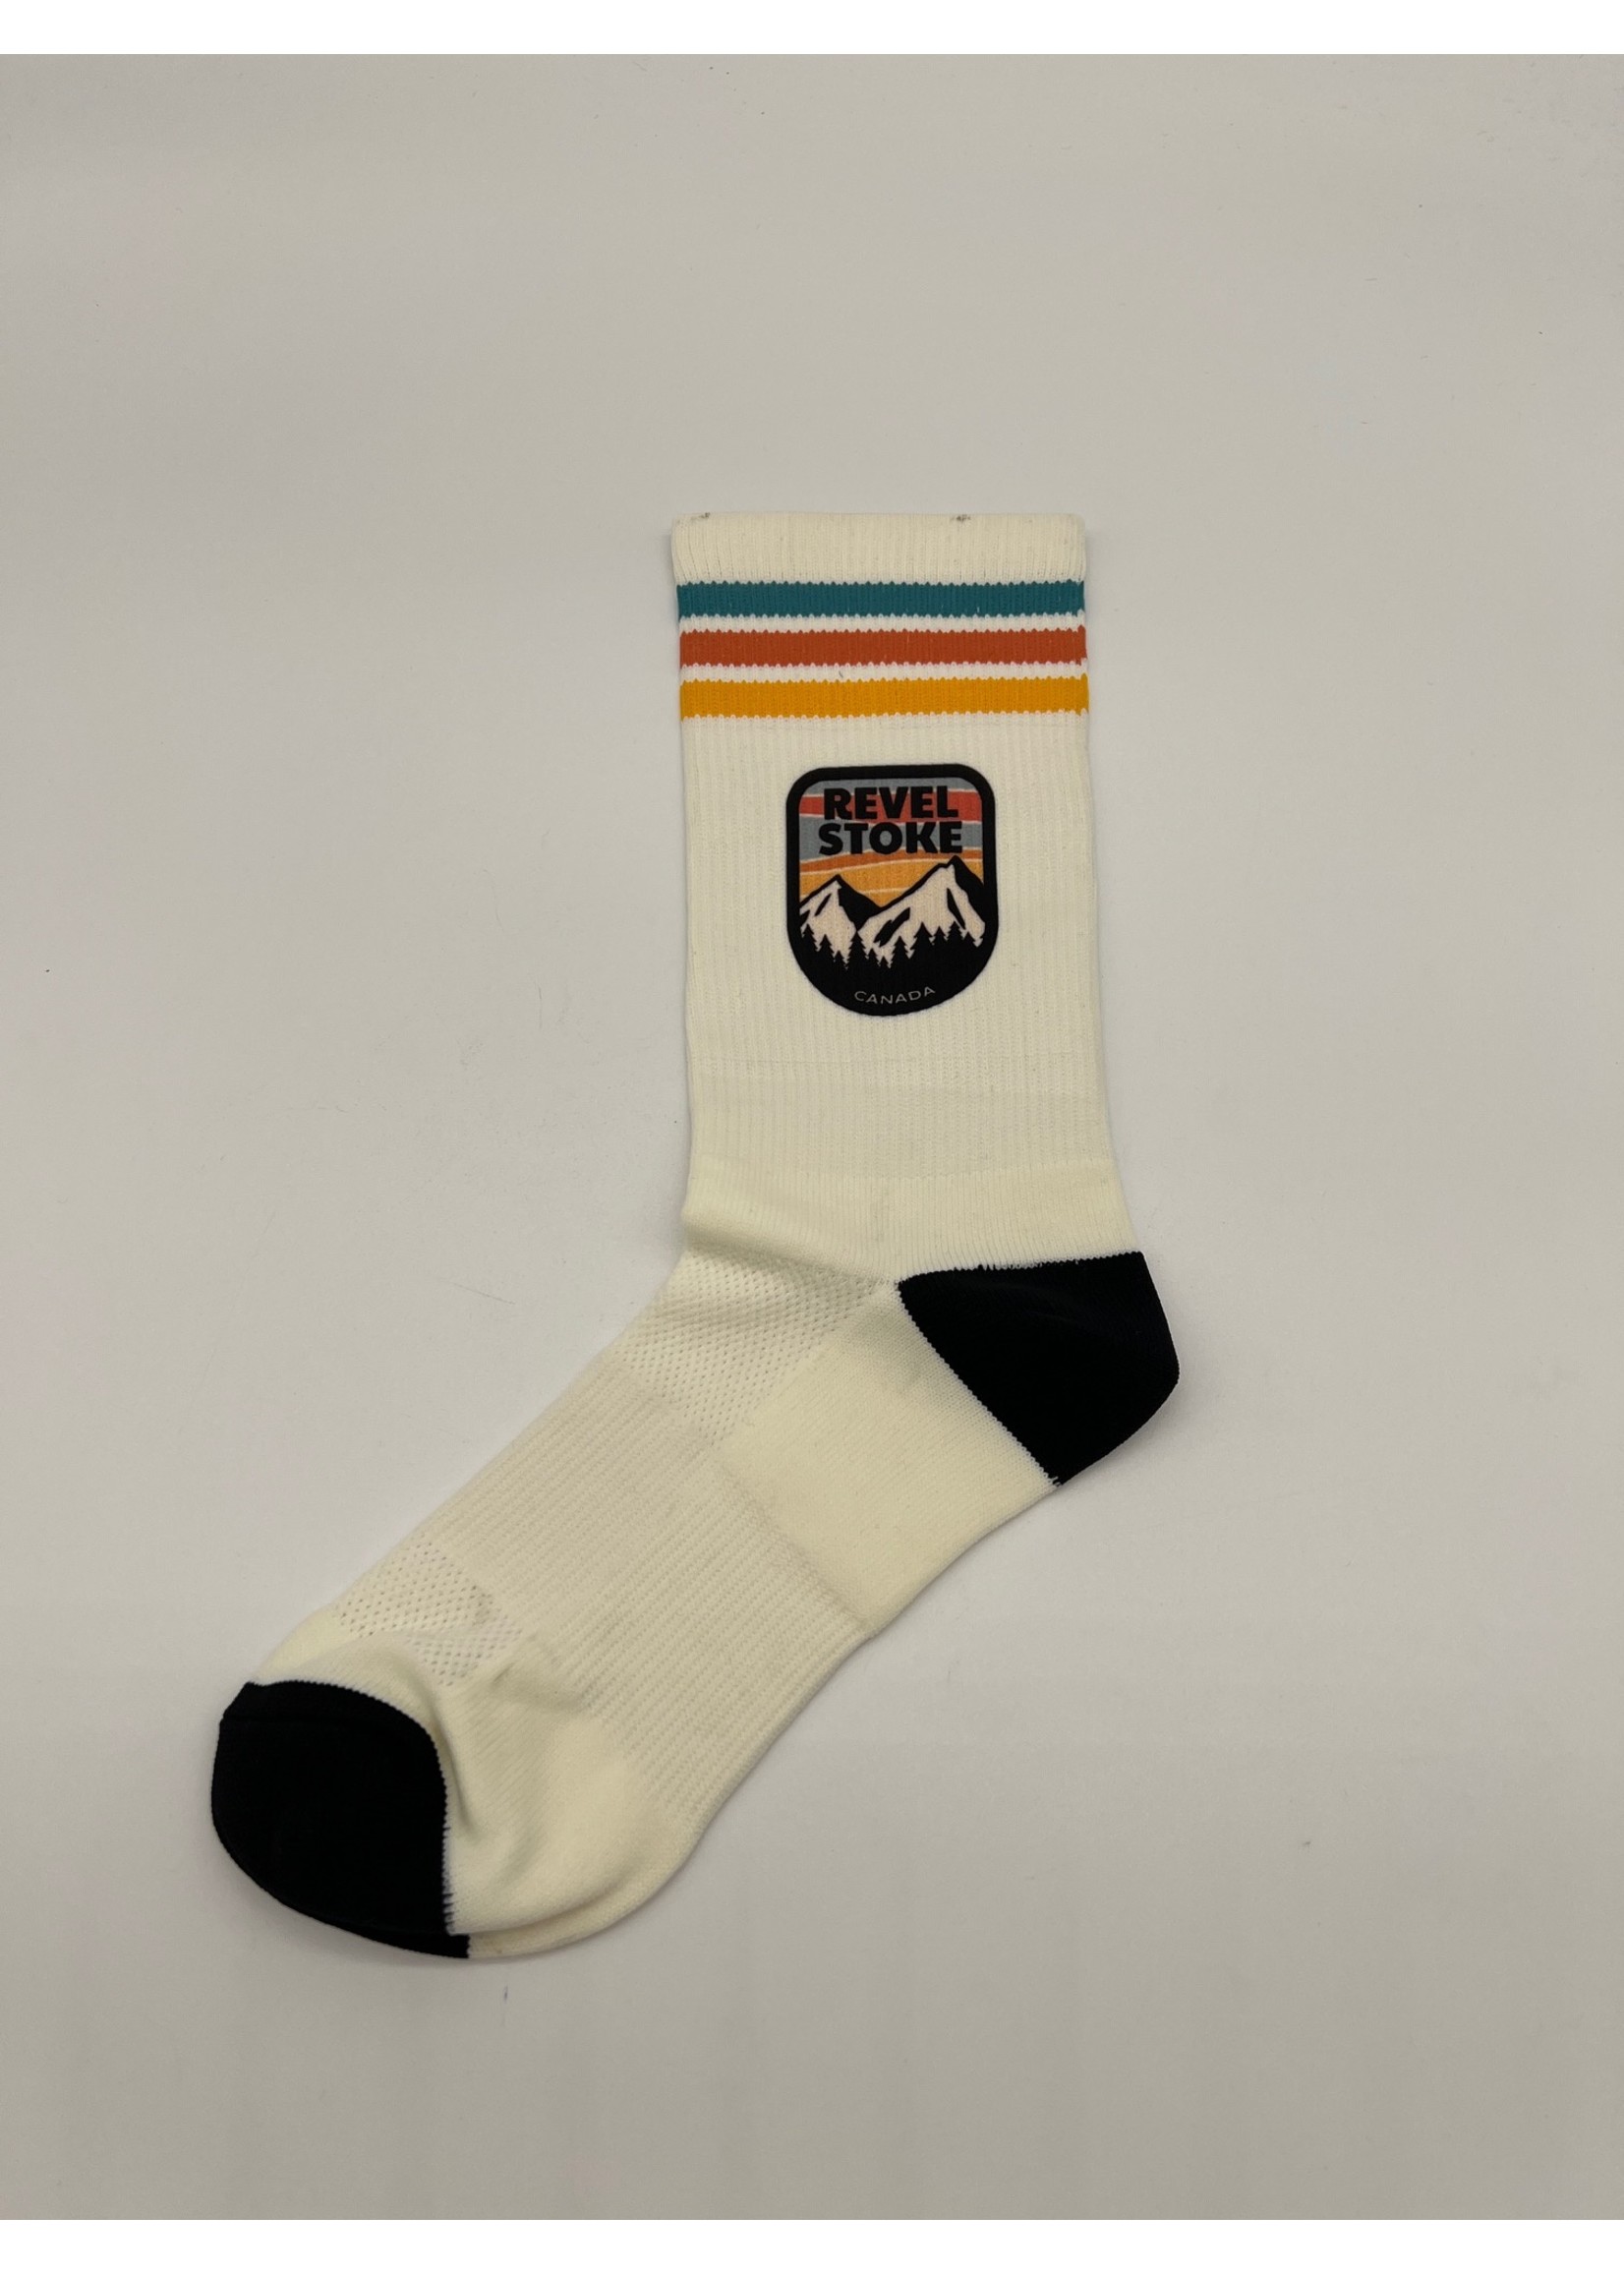 Trading Co. Revelstoke - Badge Sock